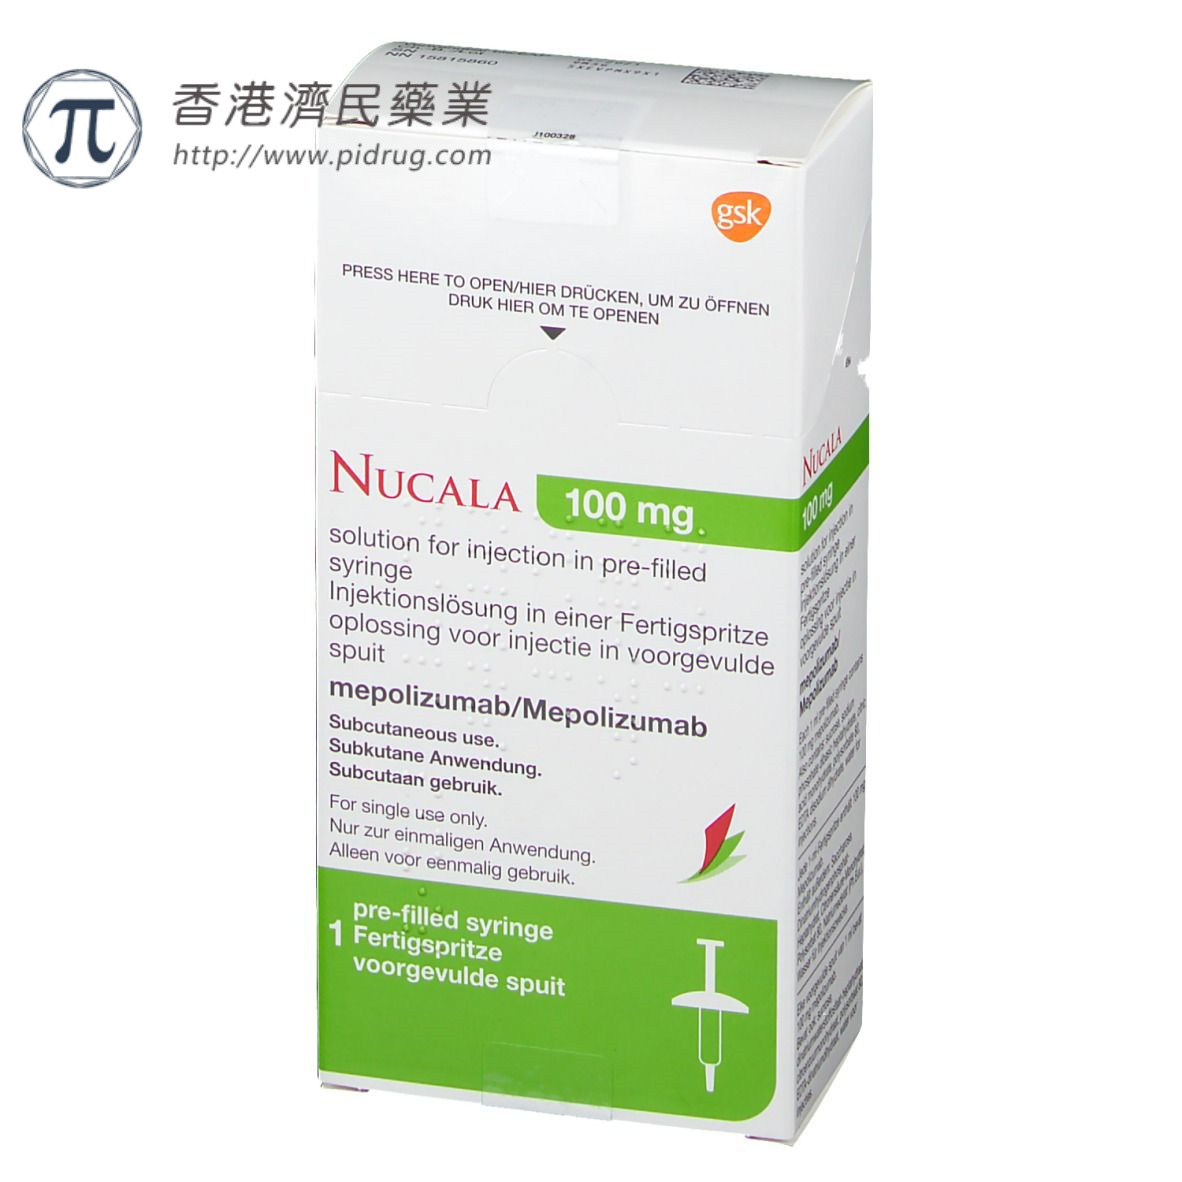 IL-5单克隆抗体Nucala用于治疗另三种嗜酸性粒细胞驱动的疾病获欧盟批准_香港济民药业